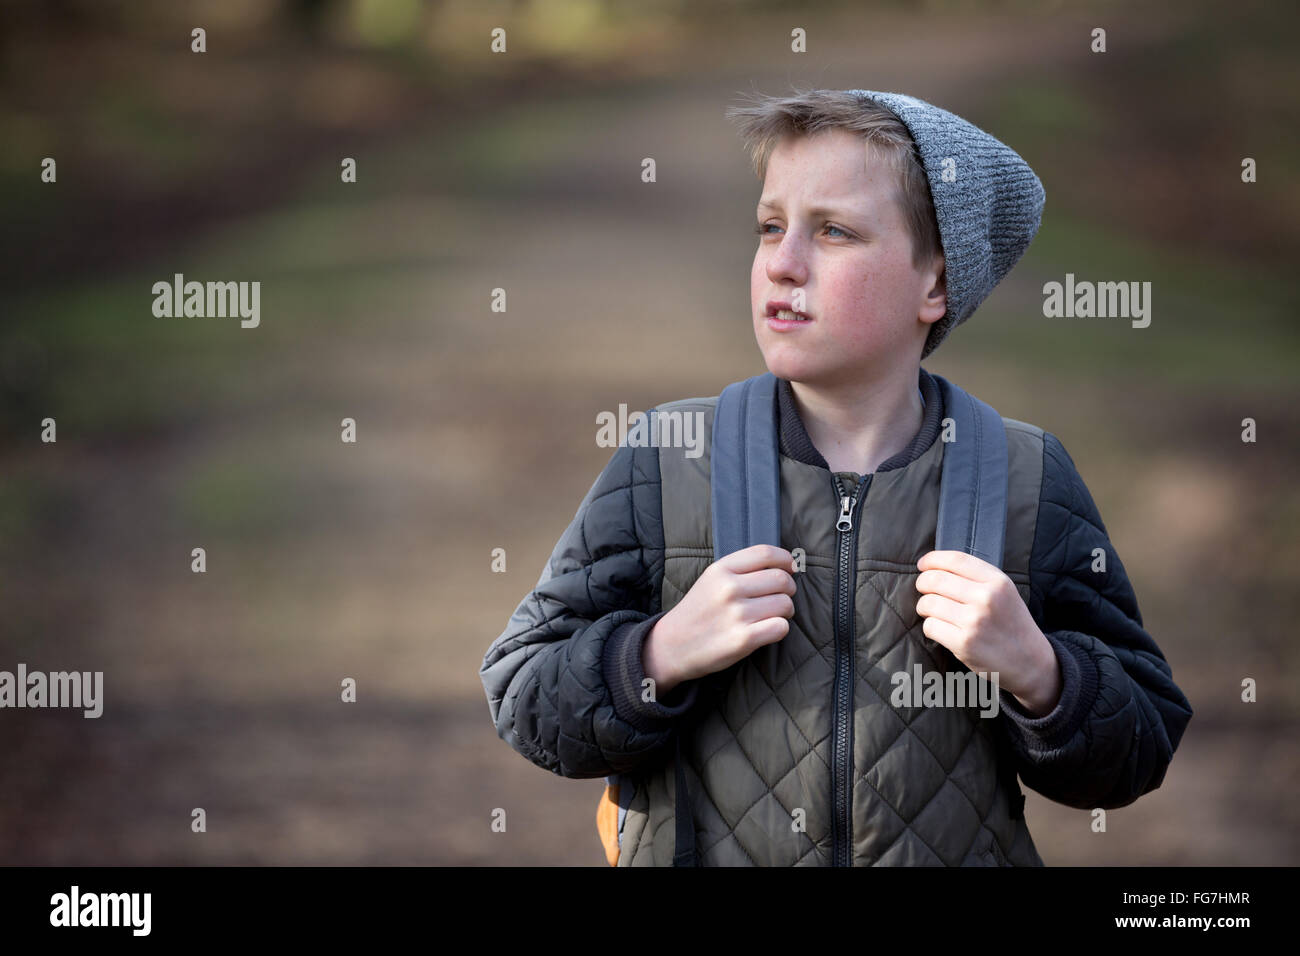 Un garçon avec un sac à dos randonnée dans les bois Banque D'Images